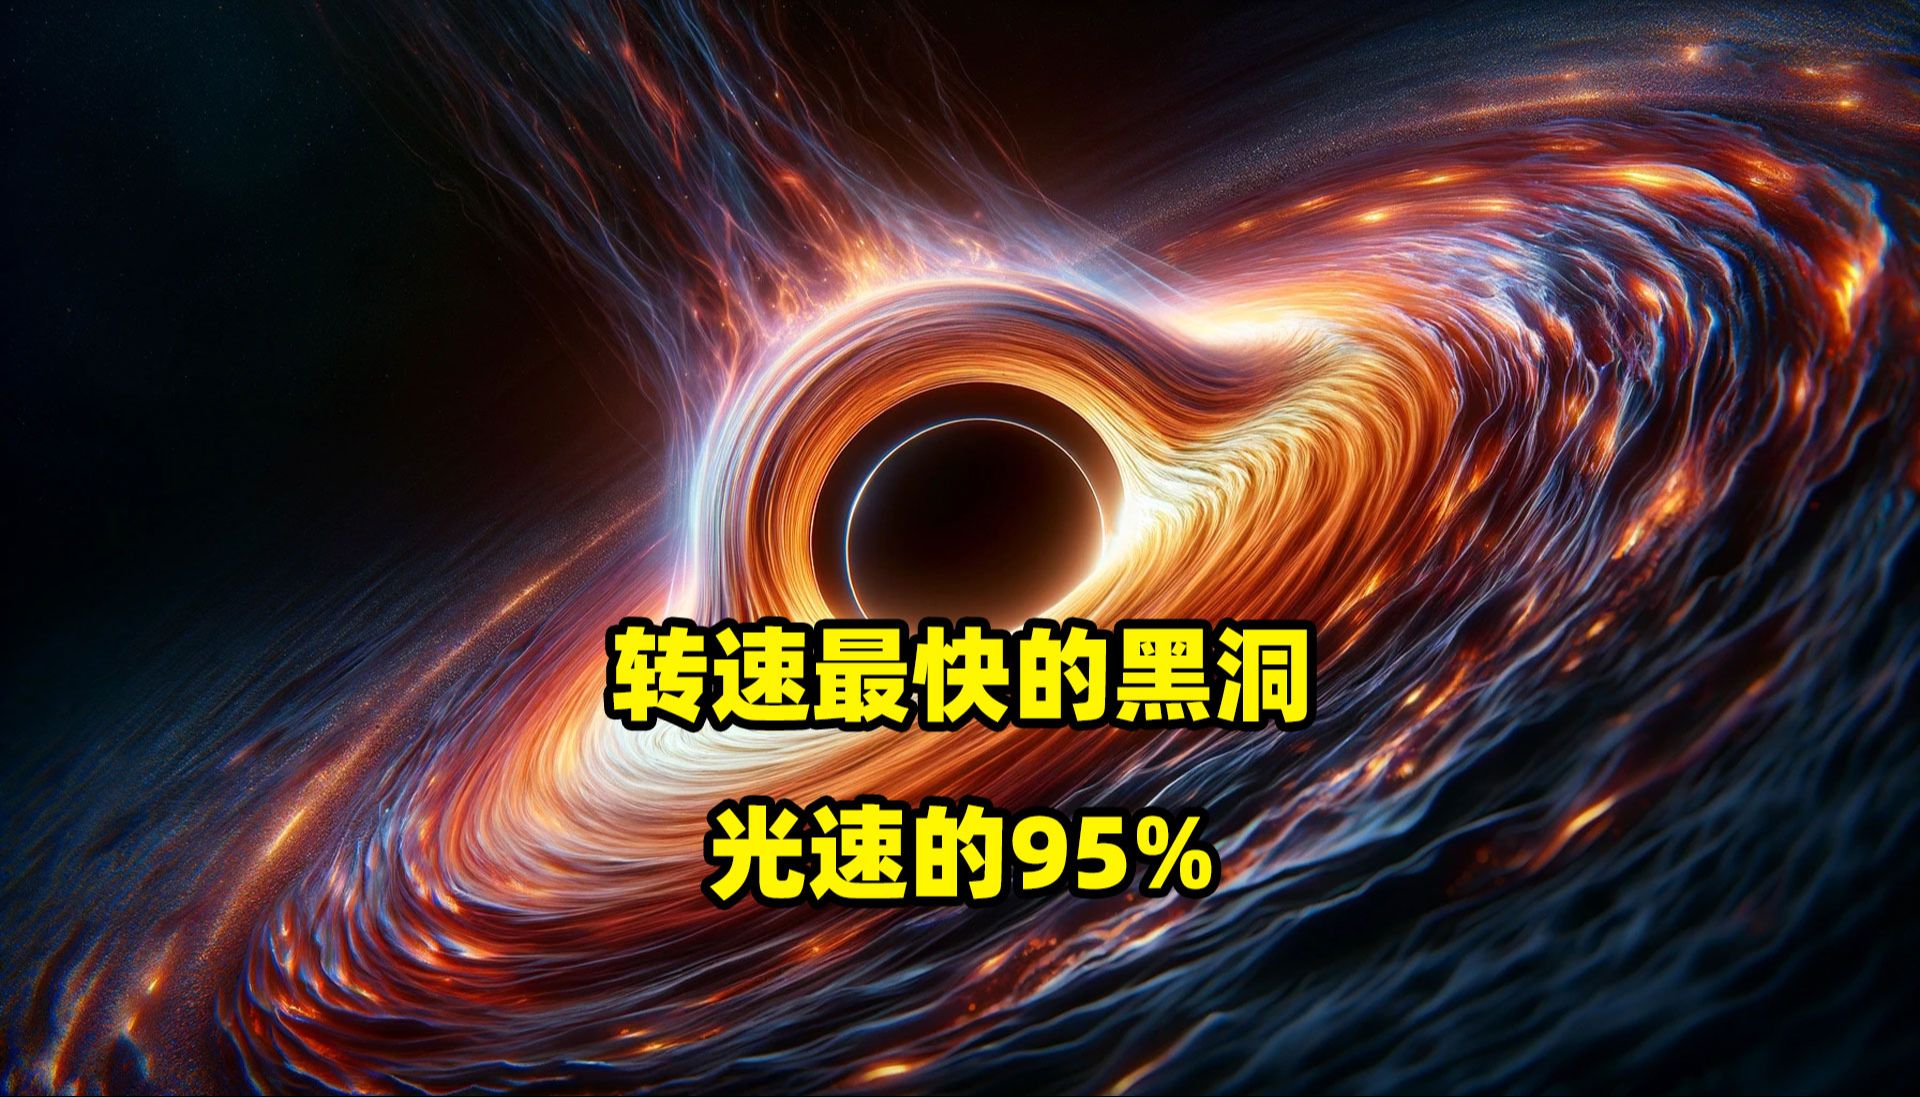 转速最快的黑洞，1秒28.5万公里，光速的95%